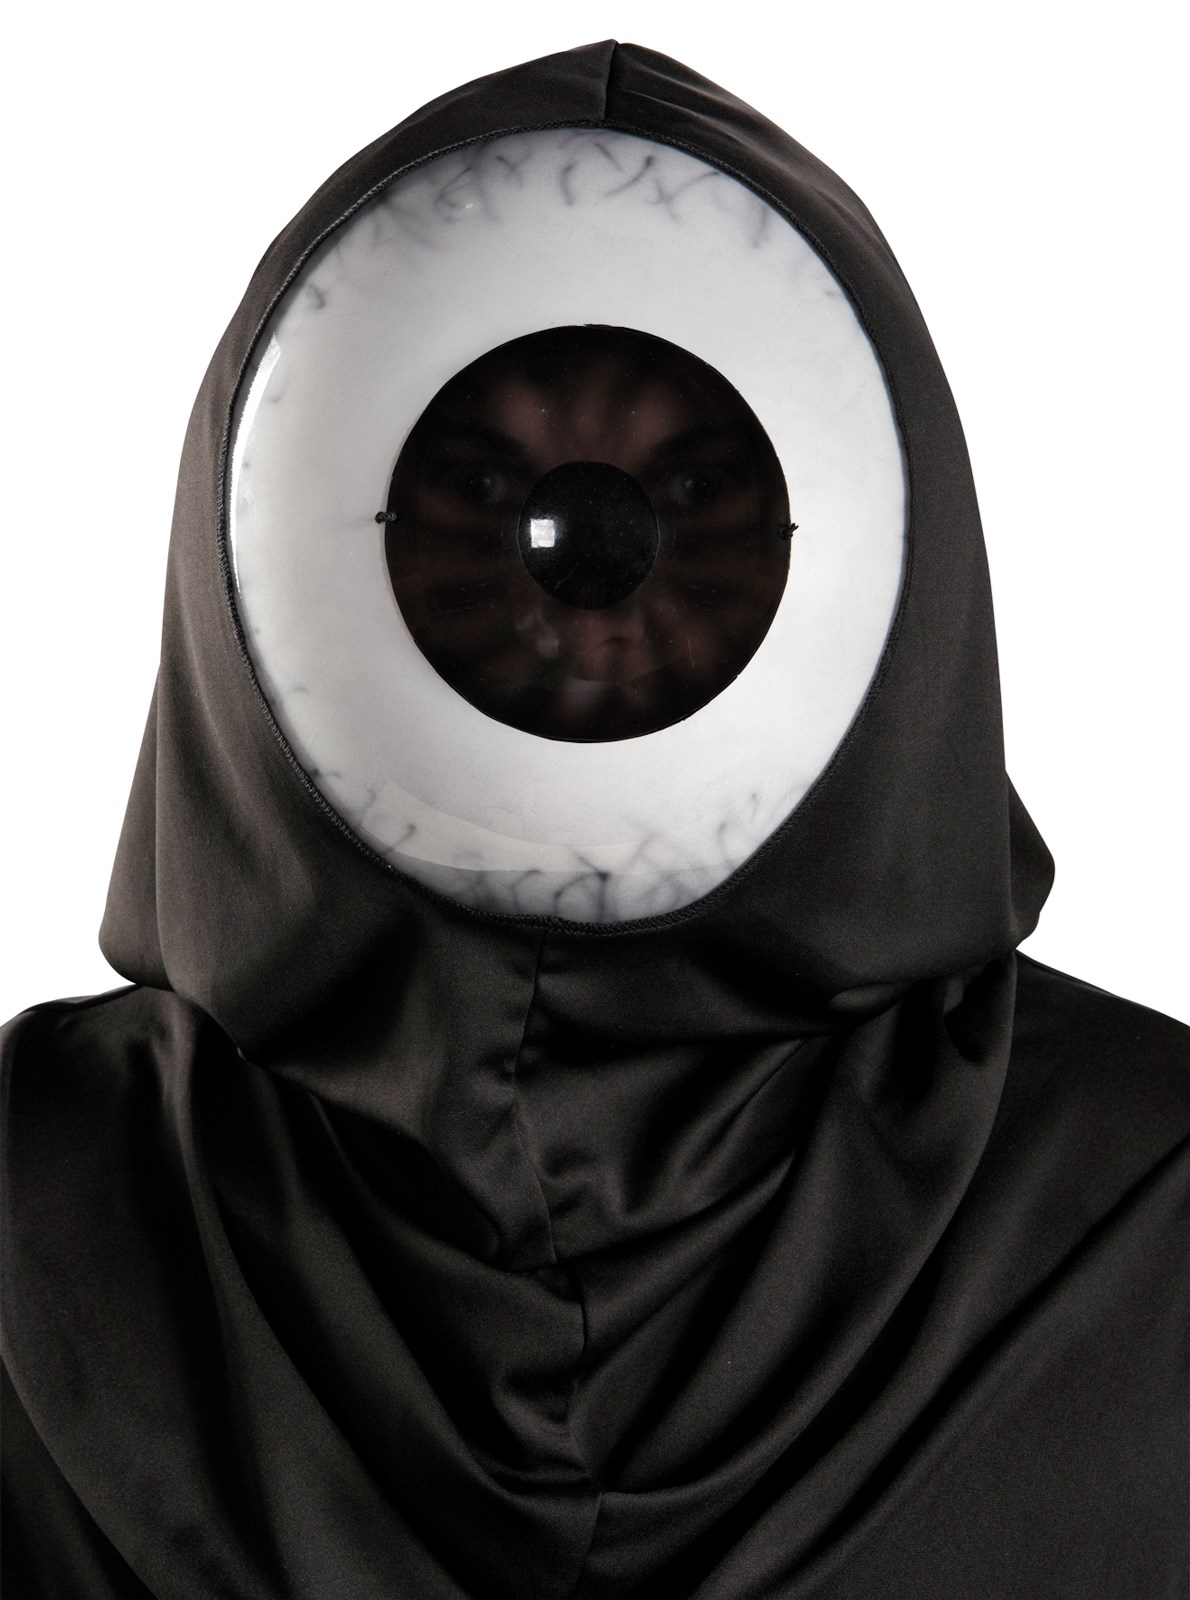 Giant Eyeball Adult Mask